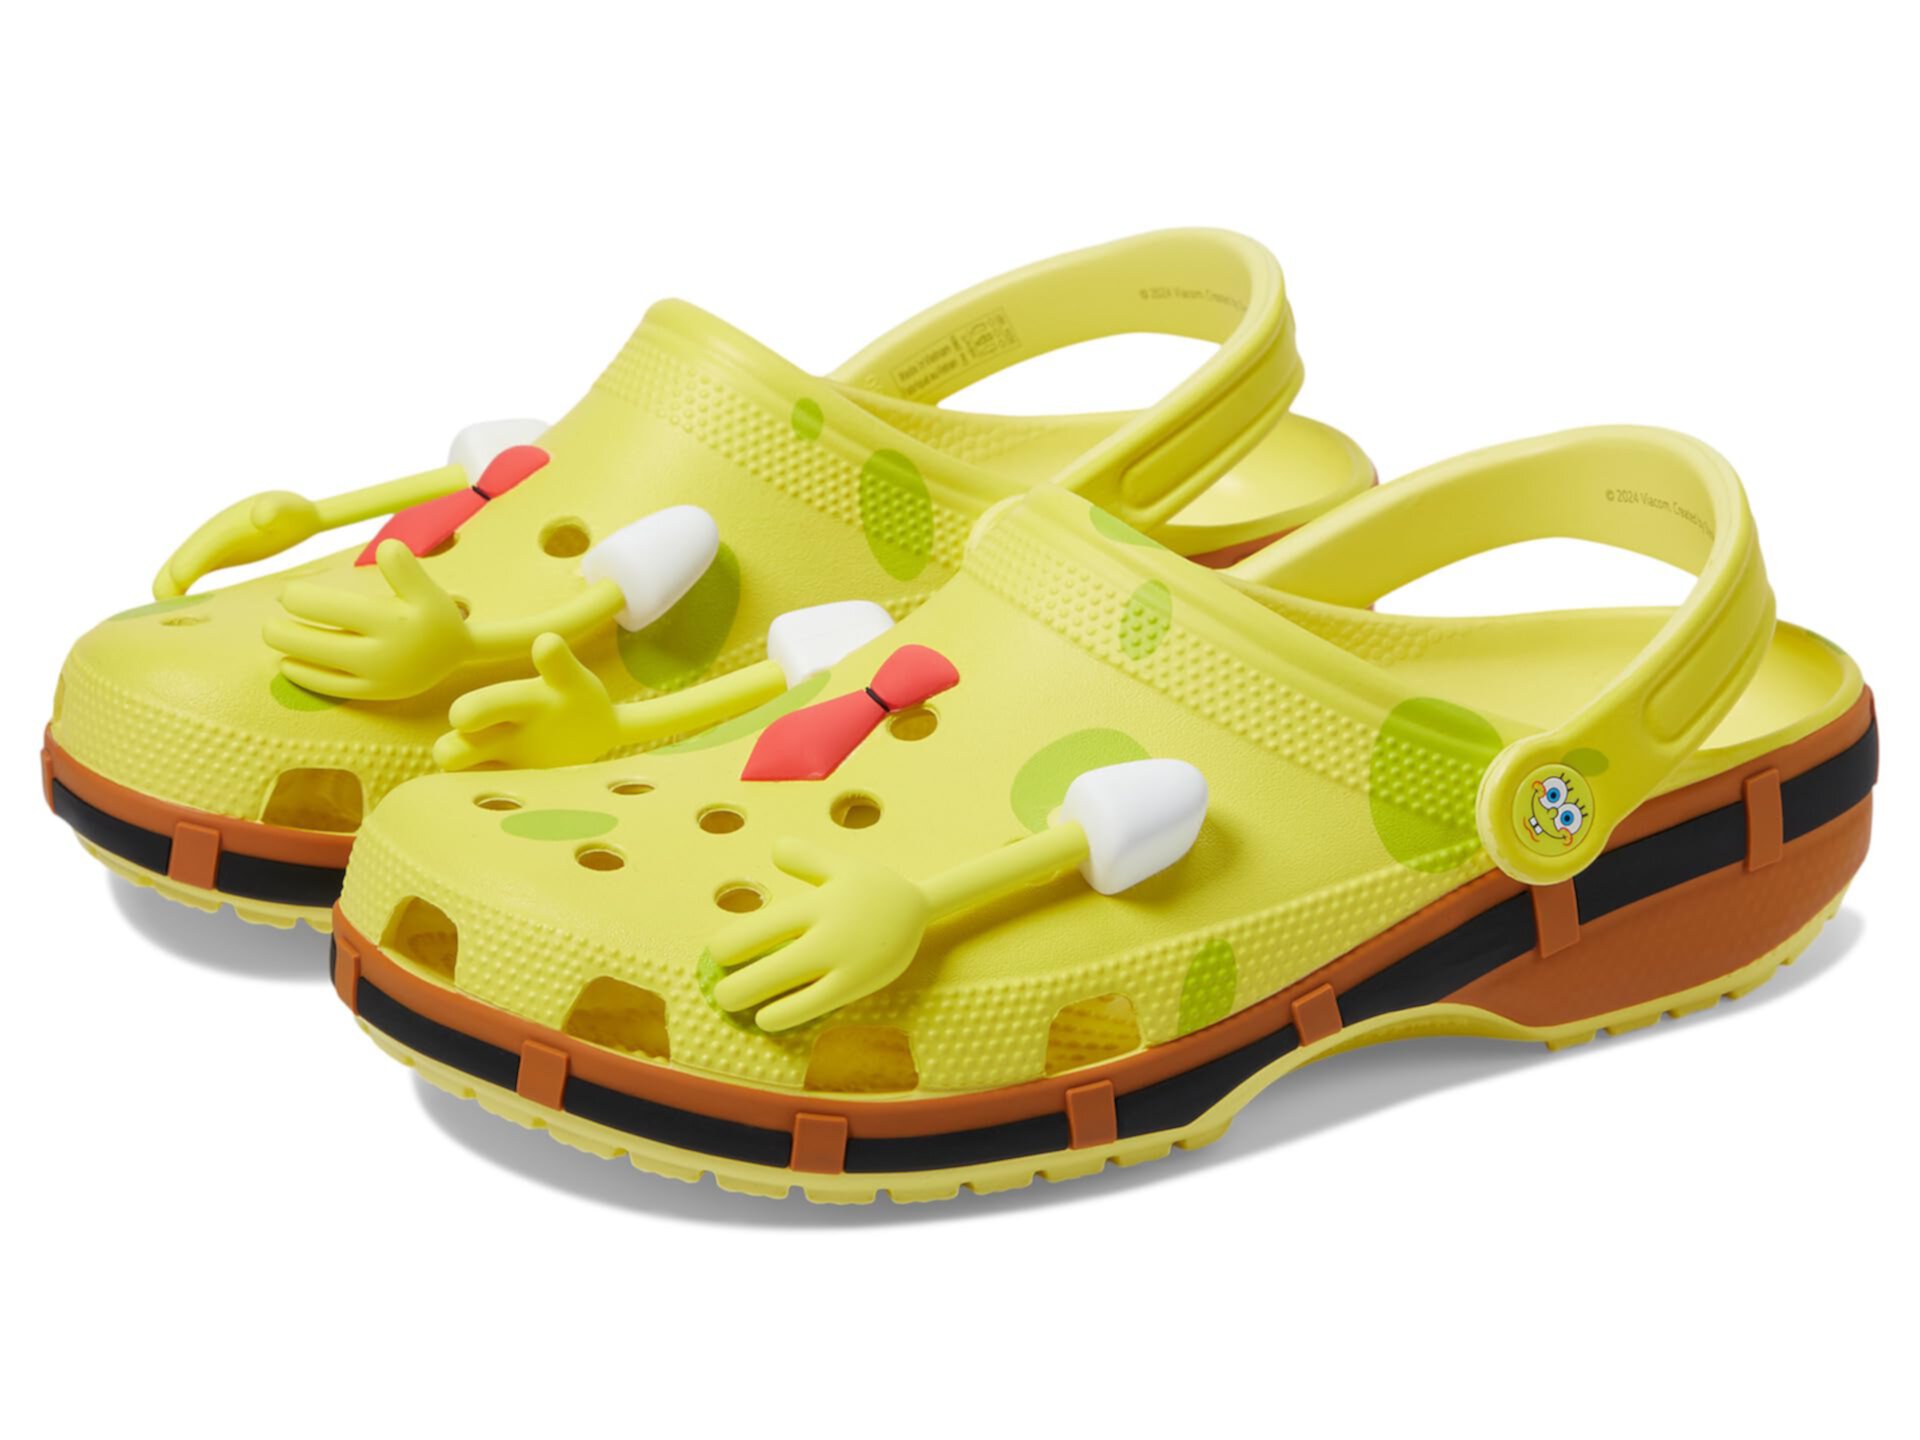 Spongebob Squarepants Classic Clog Crocs